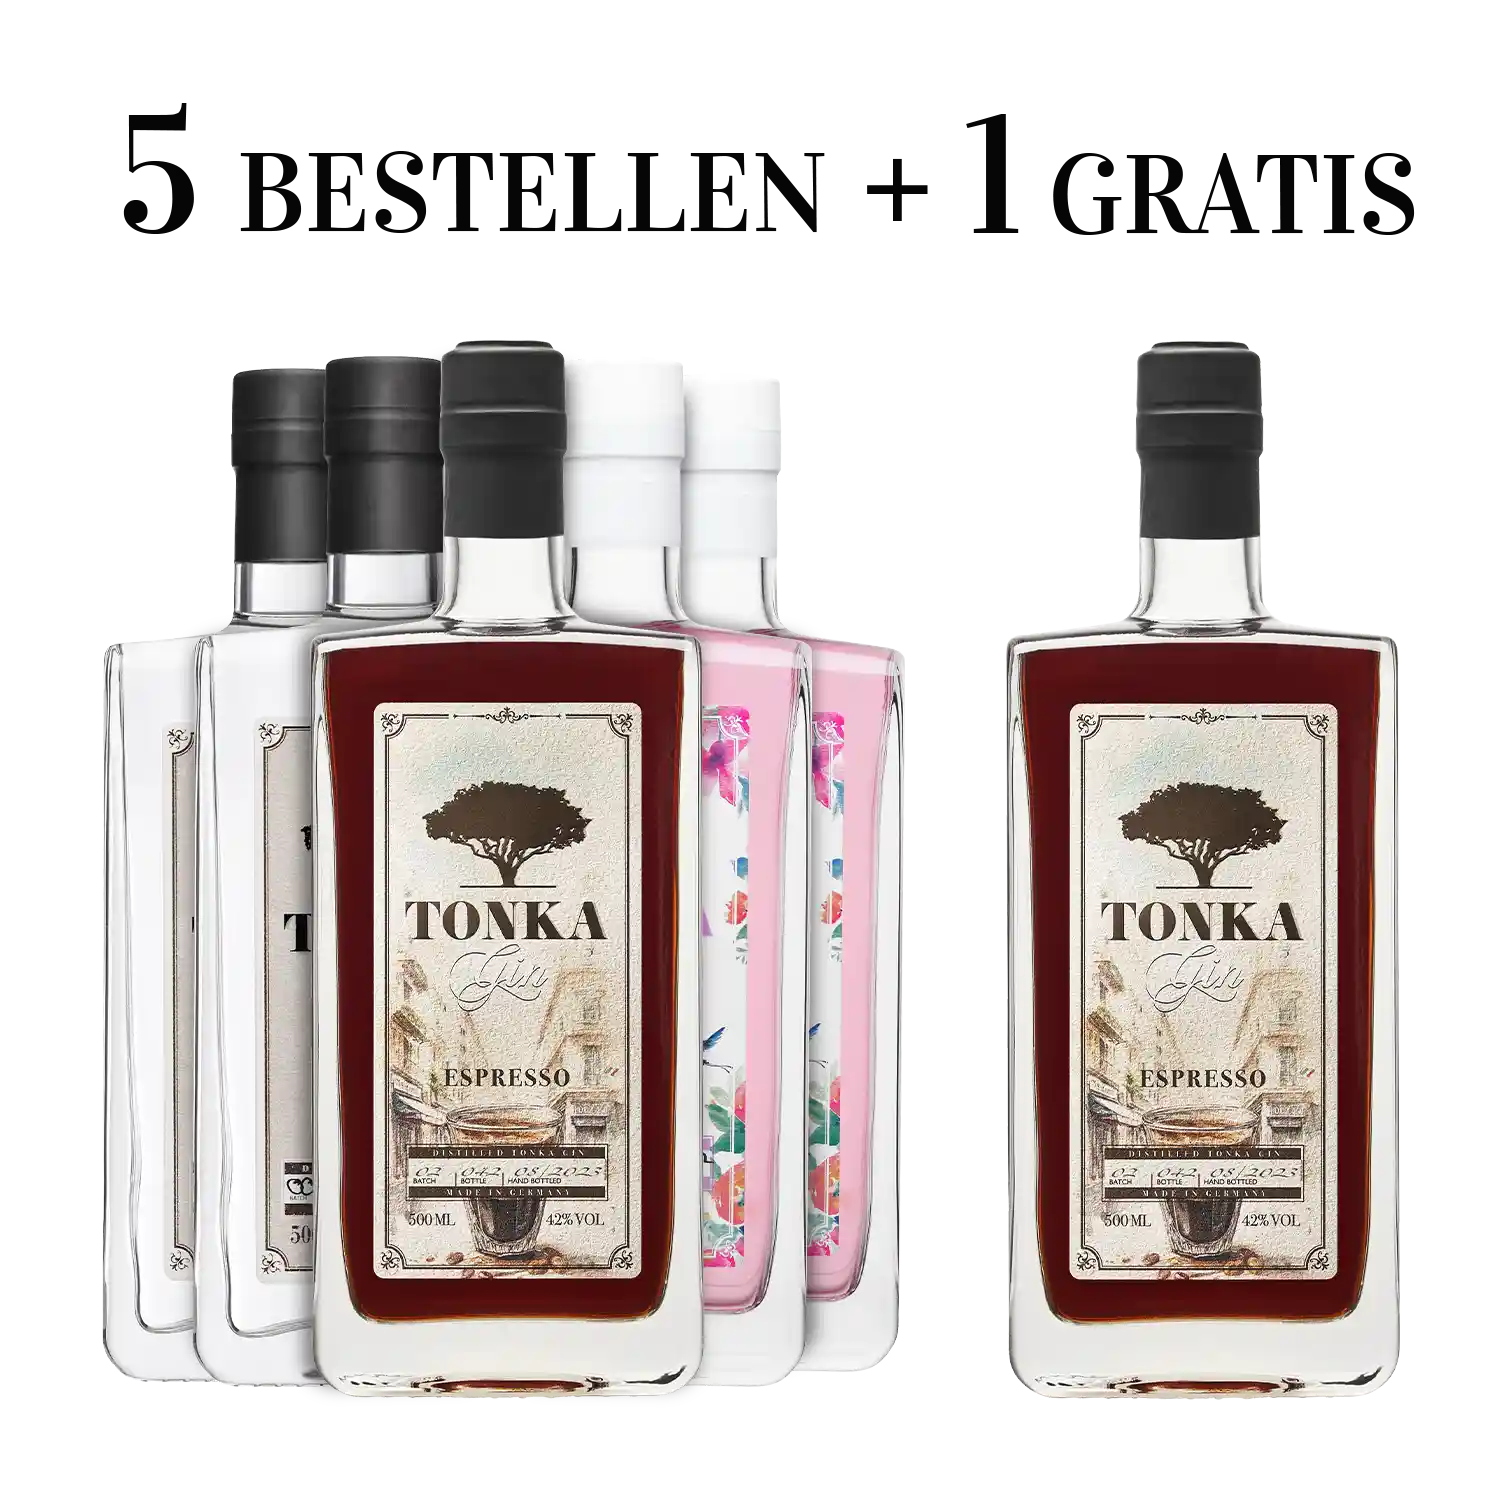 Gratis & Hibiskus Vorteilspaket – Gin 1 & Spirituosenliebhaber | | Tonka Klassik Espresso